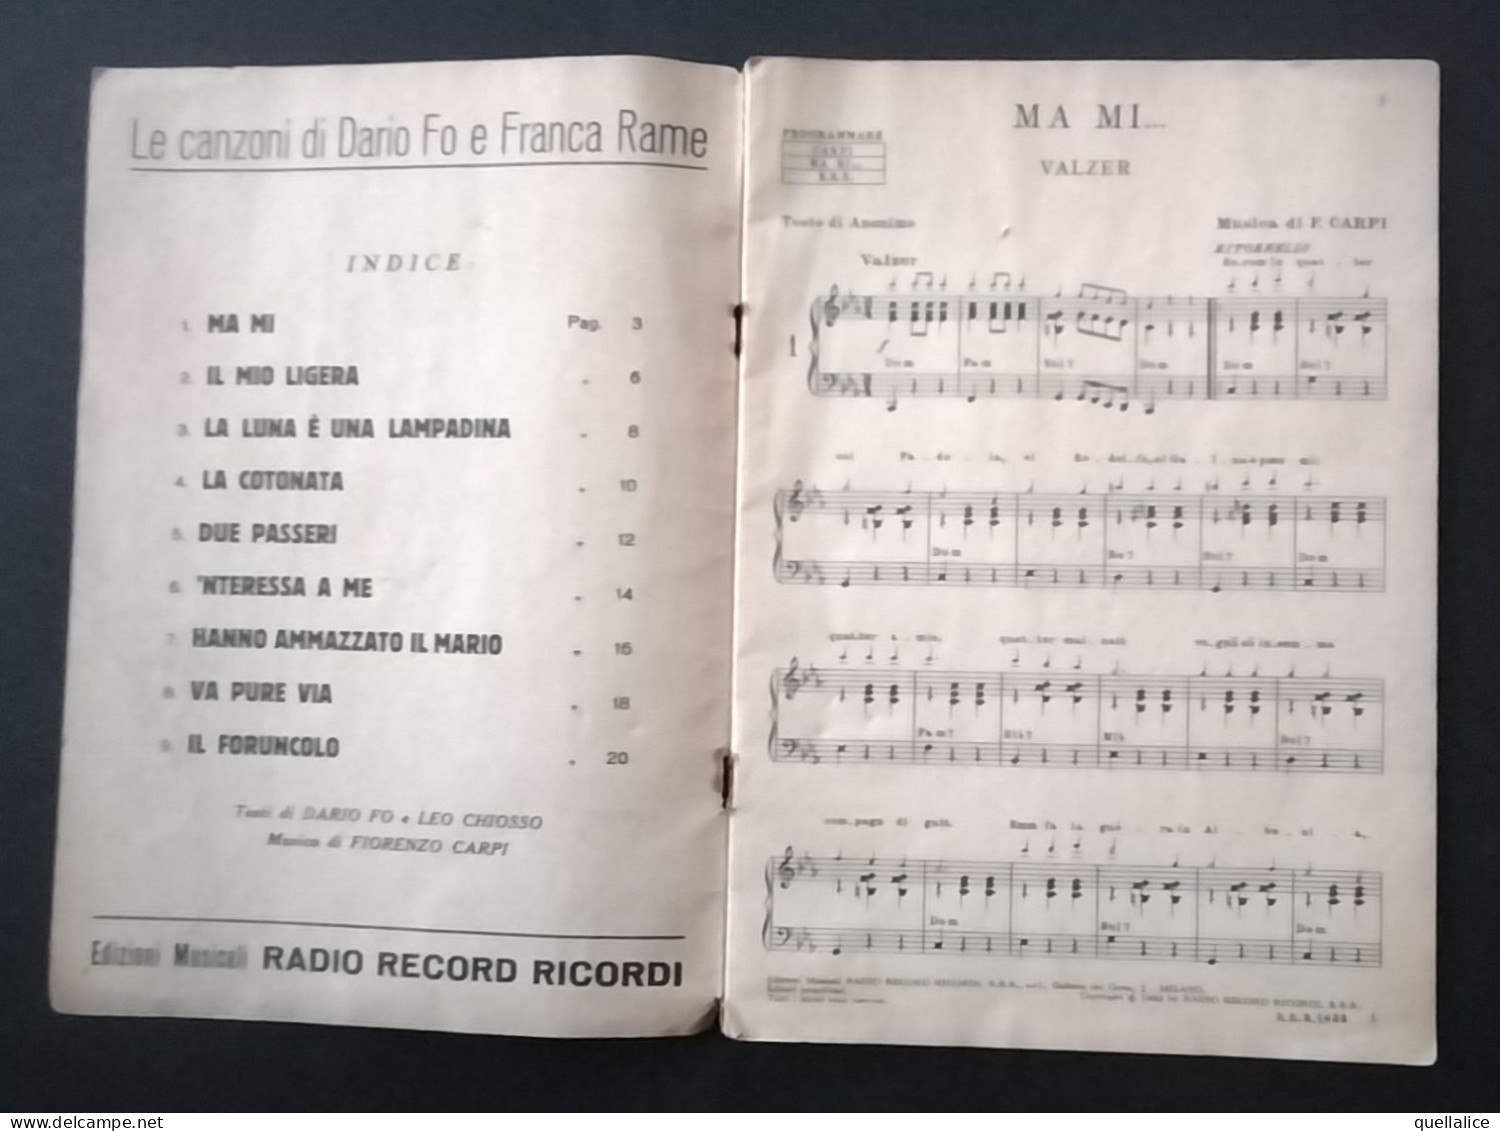 03925 "LE CANZONI DI DARIO FO E FRANCA RAME-ALBUM PROFESSIONALE -EDIZIONI MUSICALI RADIO RECORD RICORDI-MILANO" SPARTITO - Partituras